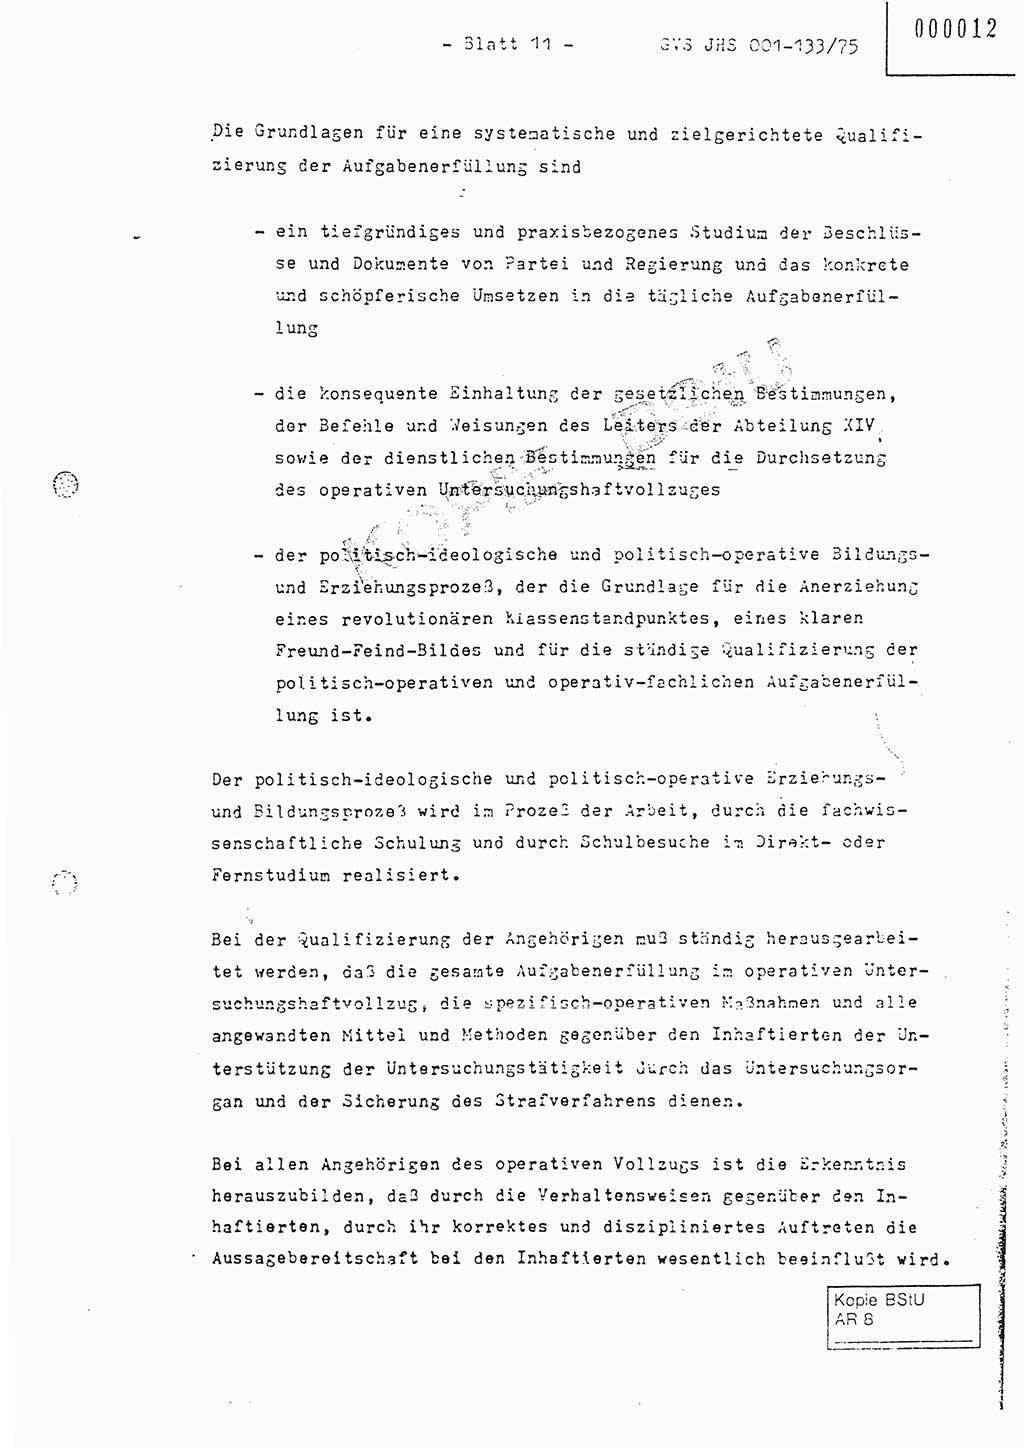 Fachschulabschlußarbeit Major Werner Braun (Abt. ⅩⅣ), Hauptmann Klaus Zeiß (Abt. ⅩⅣ), Ministerium für Staatssicherheit (MfS) [Deutsche Demokratische Republik (DDR)], Juristische Hochschule (JHS), Geheime Verschlußsache (GVS) 001-133/75, Potsdam 1976, Blatt 11 (FS-Abschl.-Arb. MfS DDR JHS GVS 001-133/75 1976, Bl. 11)